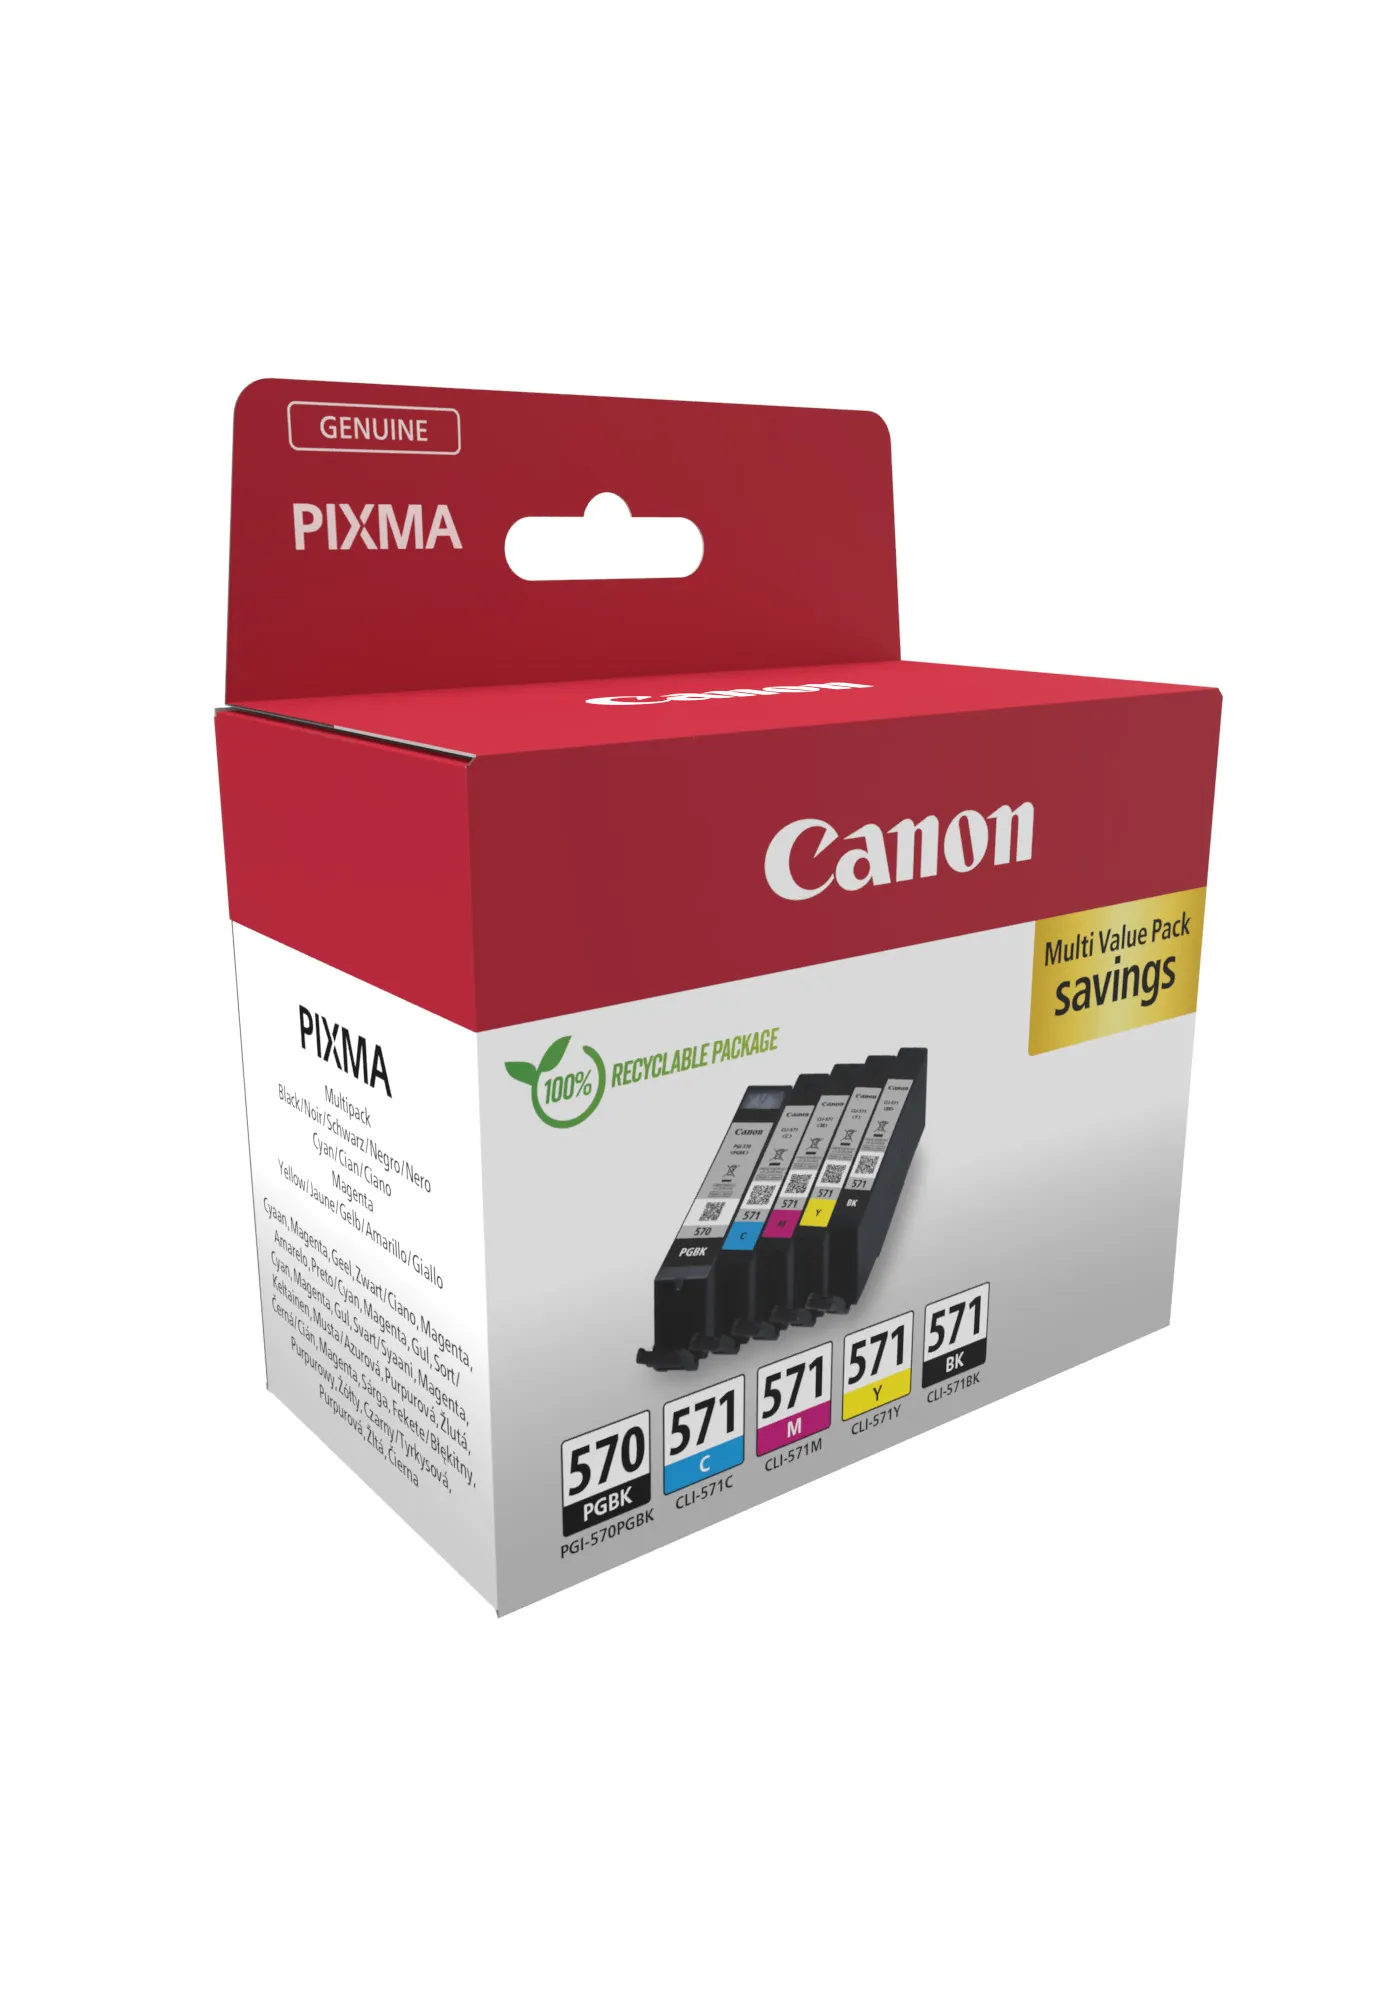 Vente CANON PGI-570/CLI-571 Ink Cartridge PGBK/C/M/Y/BK Canon au meilleur prix - visuel 2